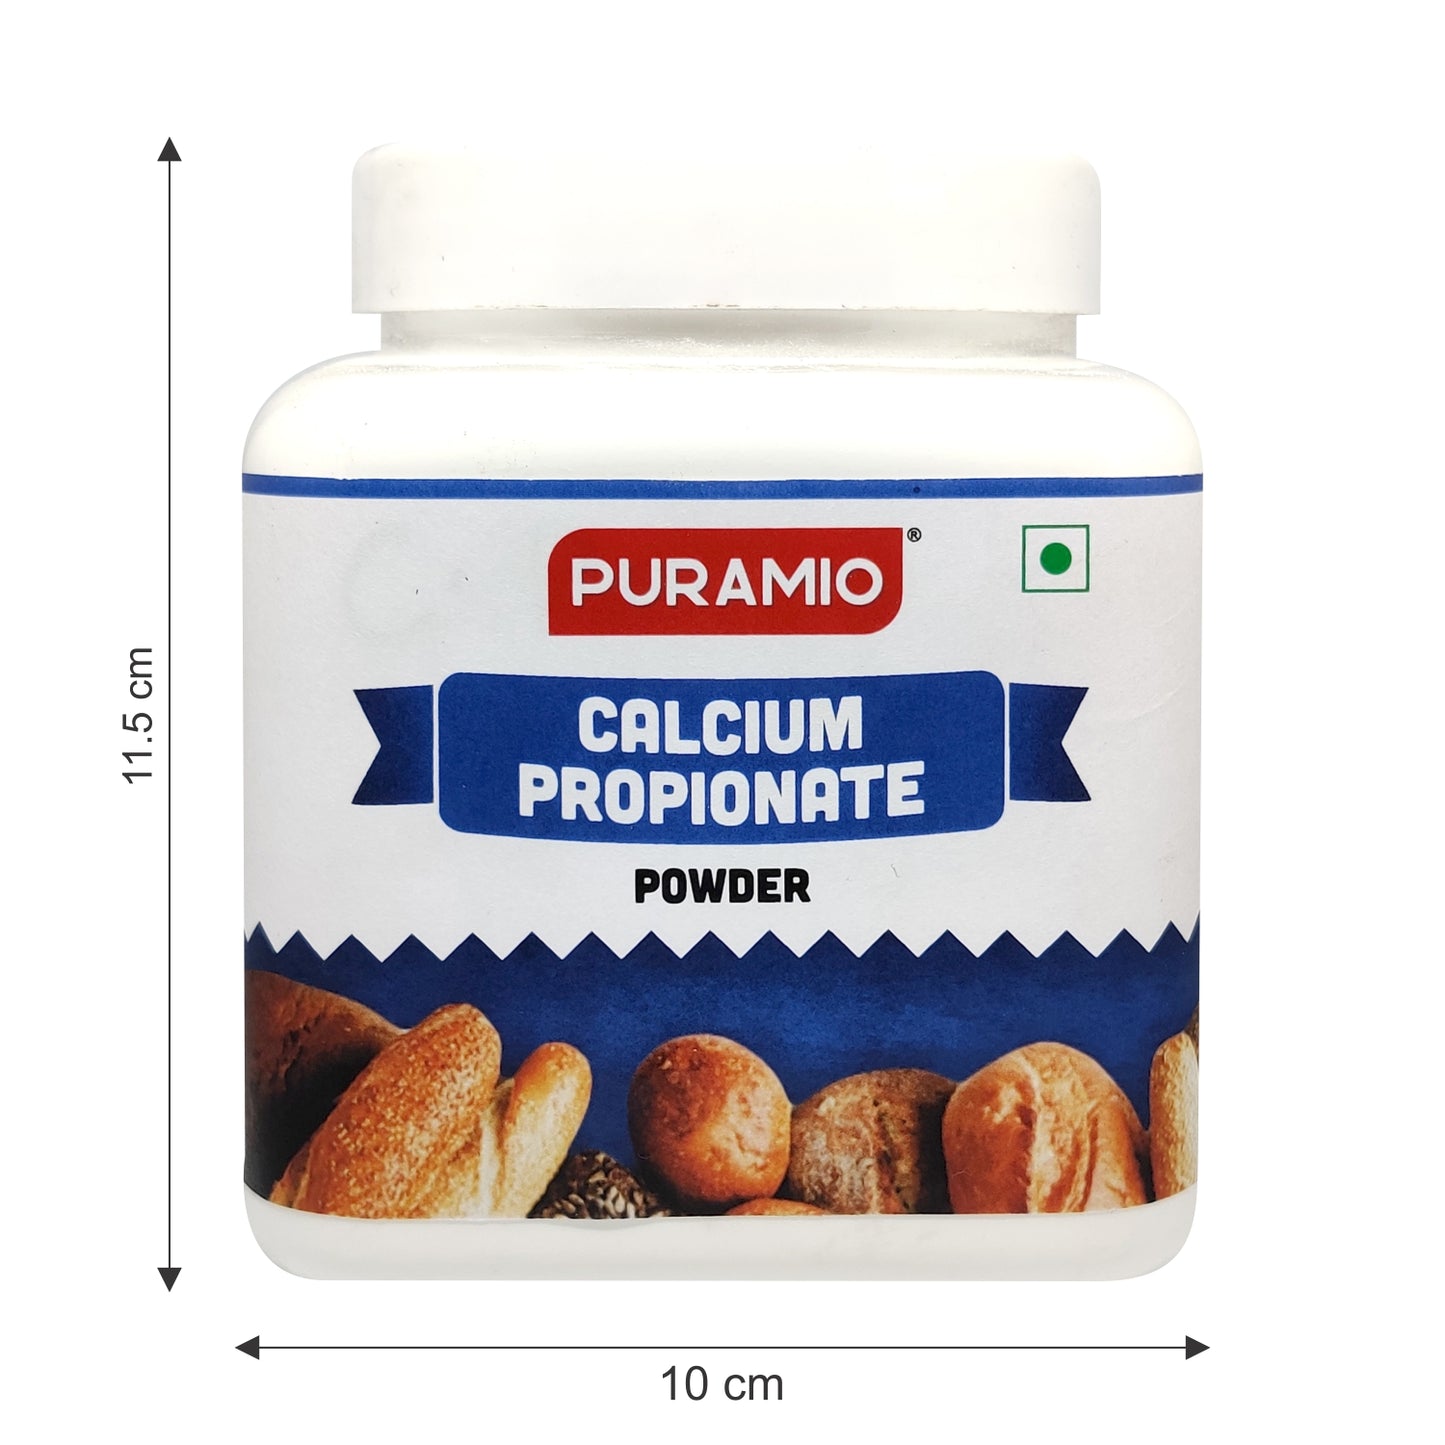 Puramio Calcium Propionate Powder